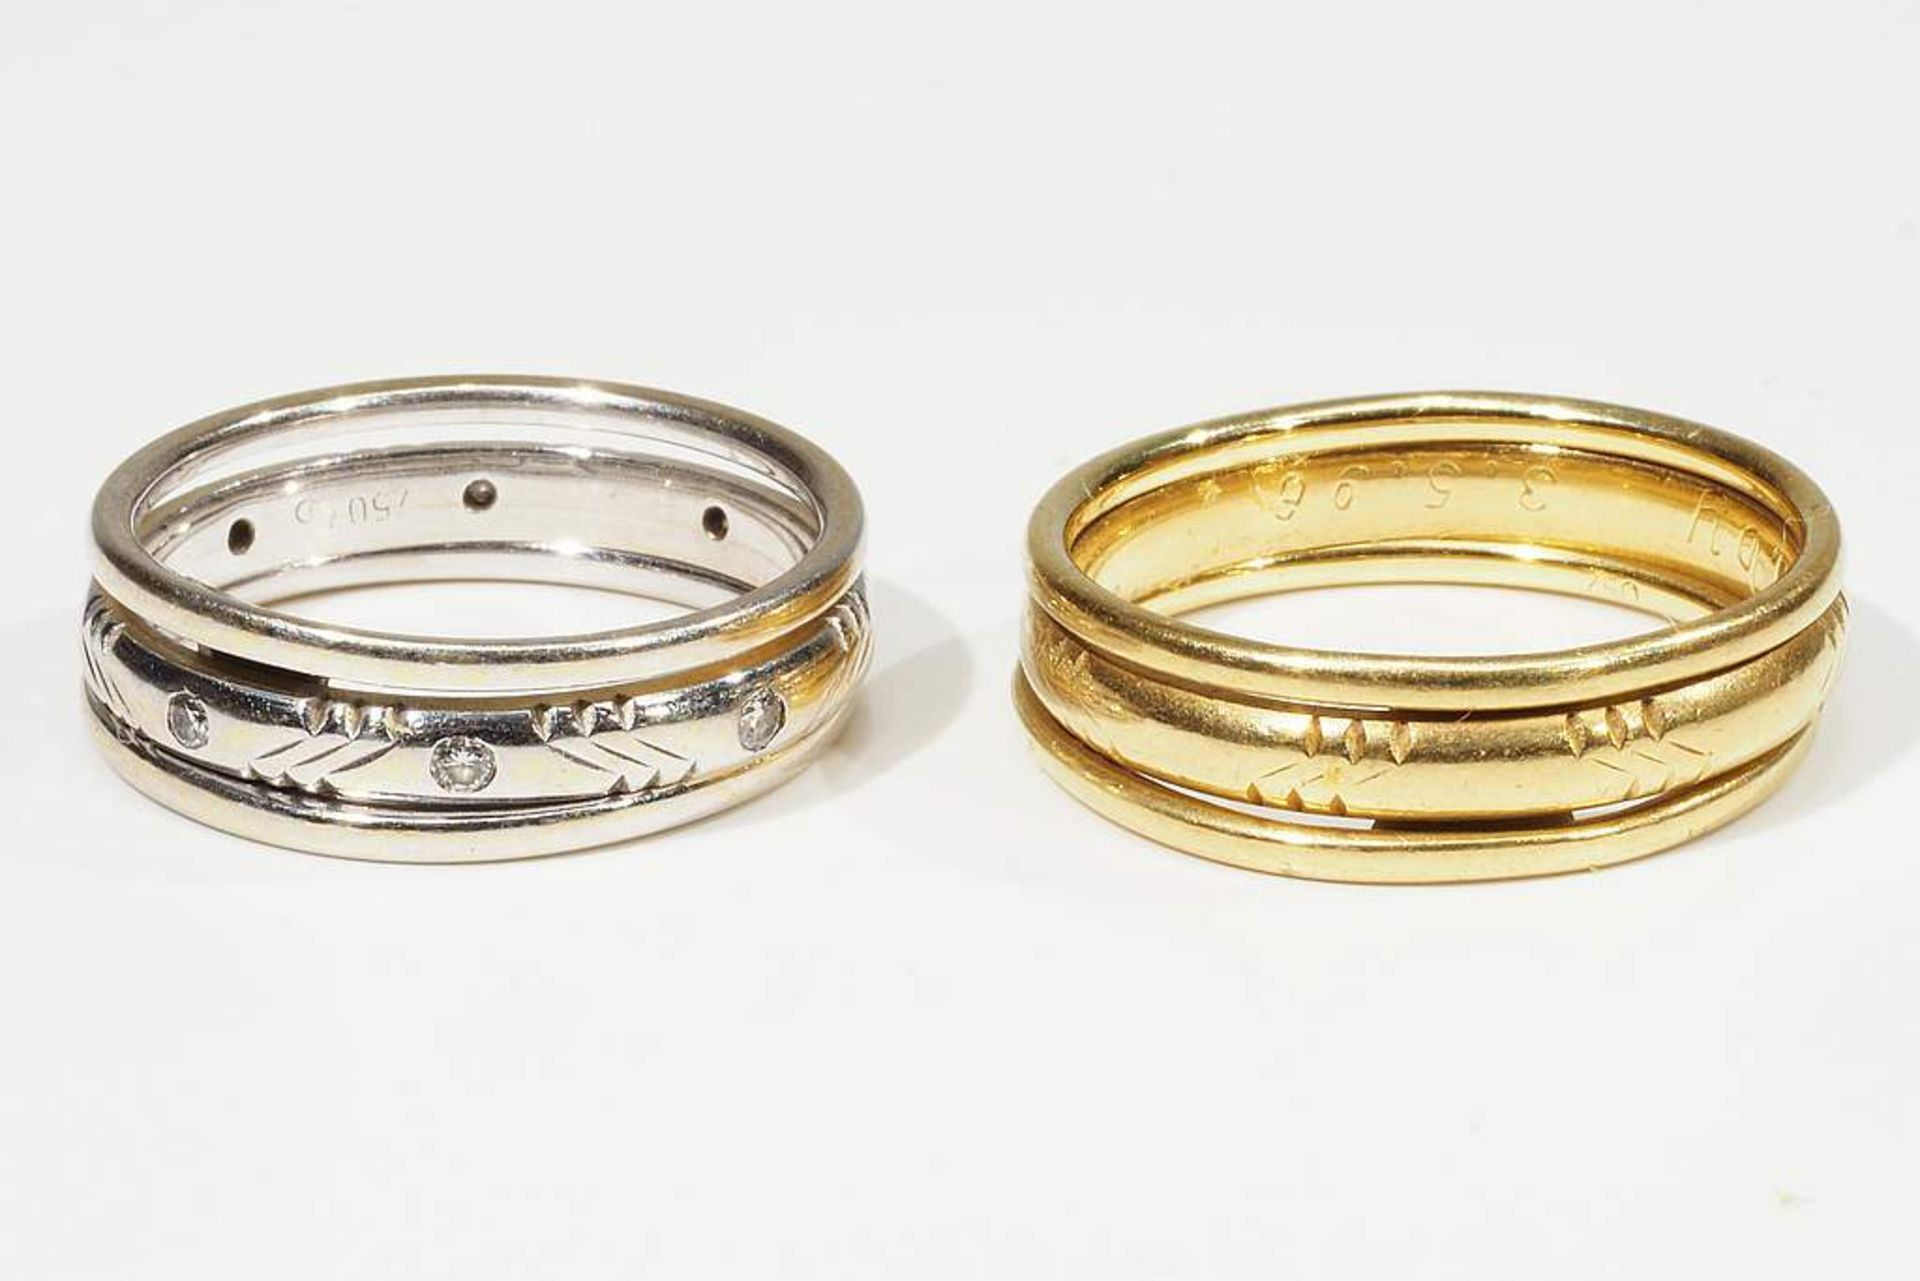 Paar Ringe. Gelb- und Weißgold. 750er Gold mit Innengravur, besetzt mit kleinen Diamanten. - Image 2 of 7